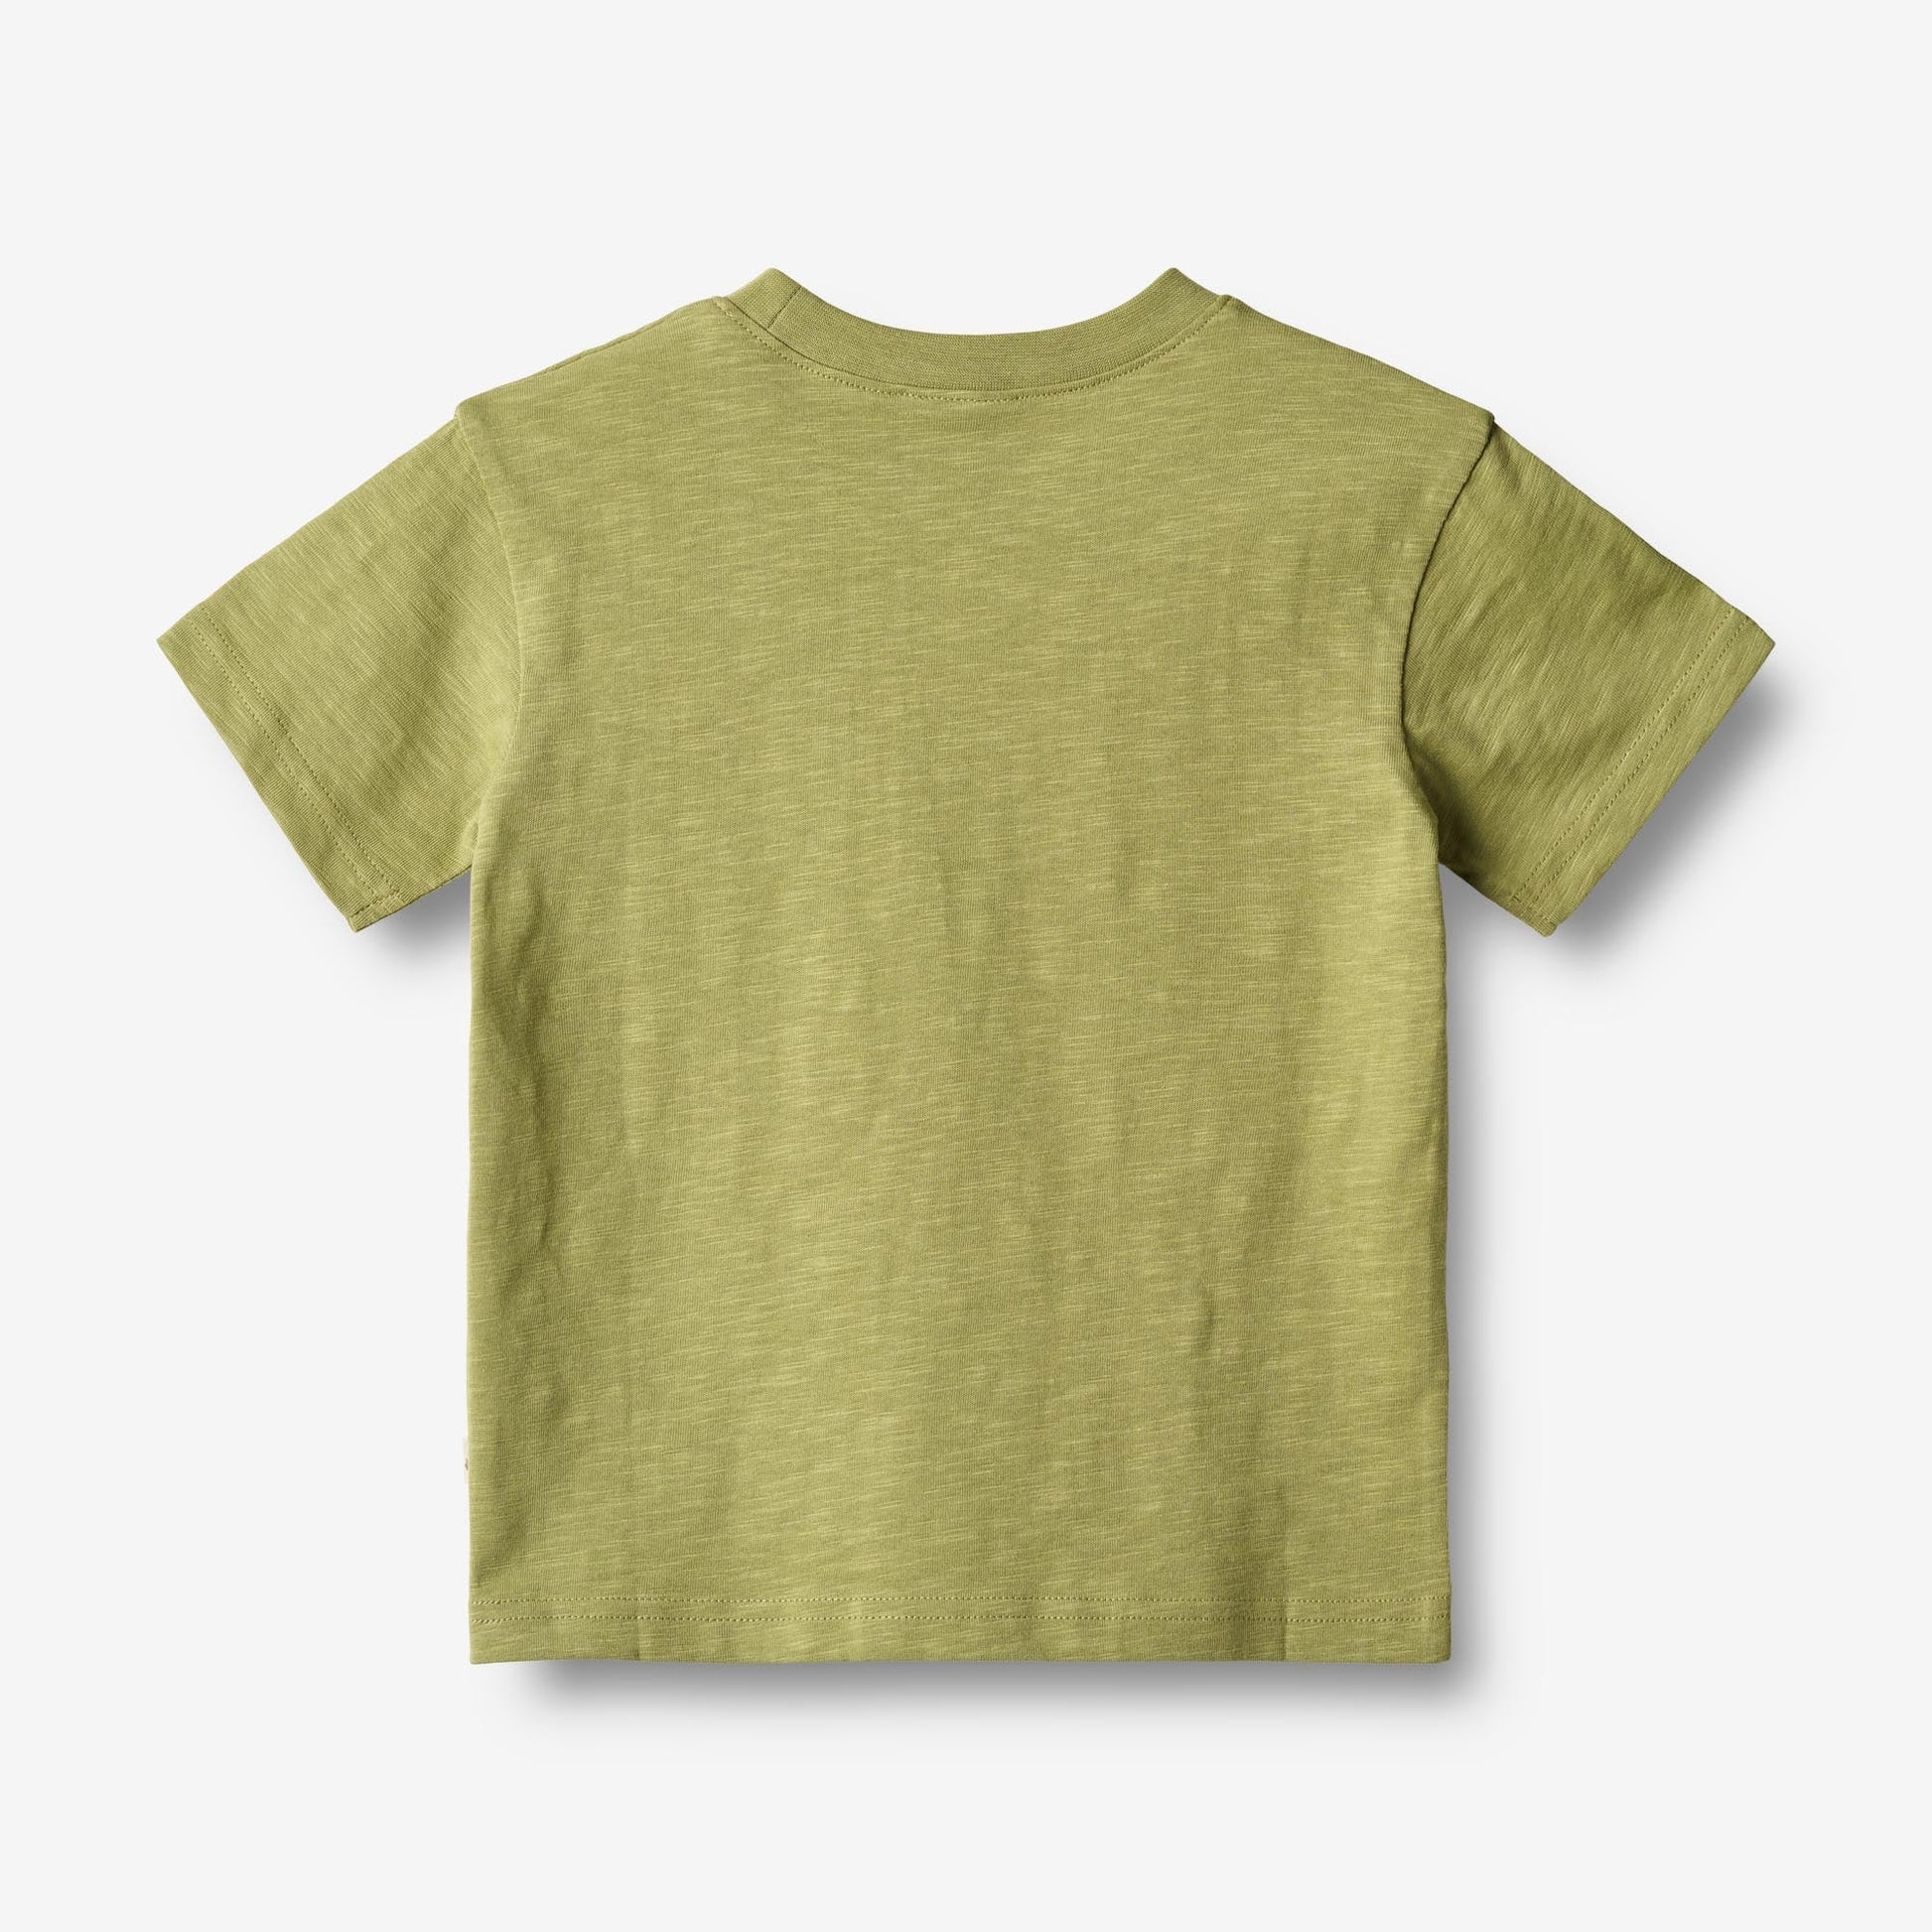 Wheat 'Dines' S/S Children's T-Shirt - Sage